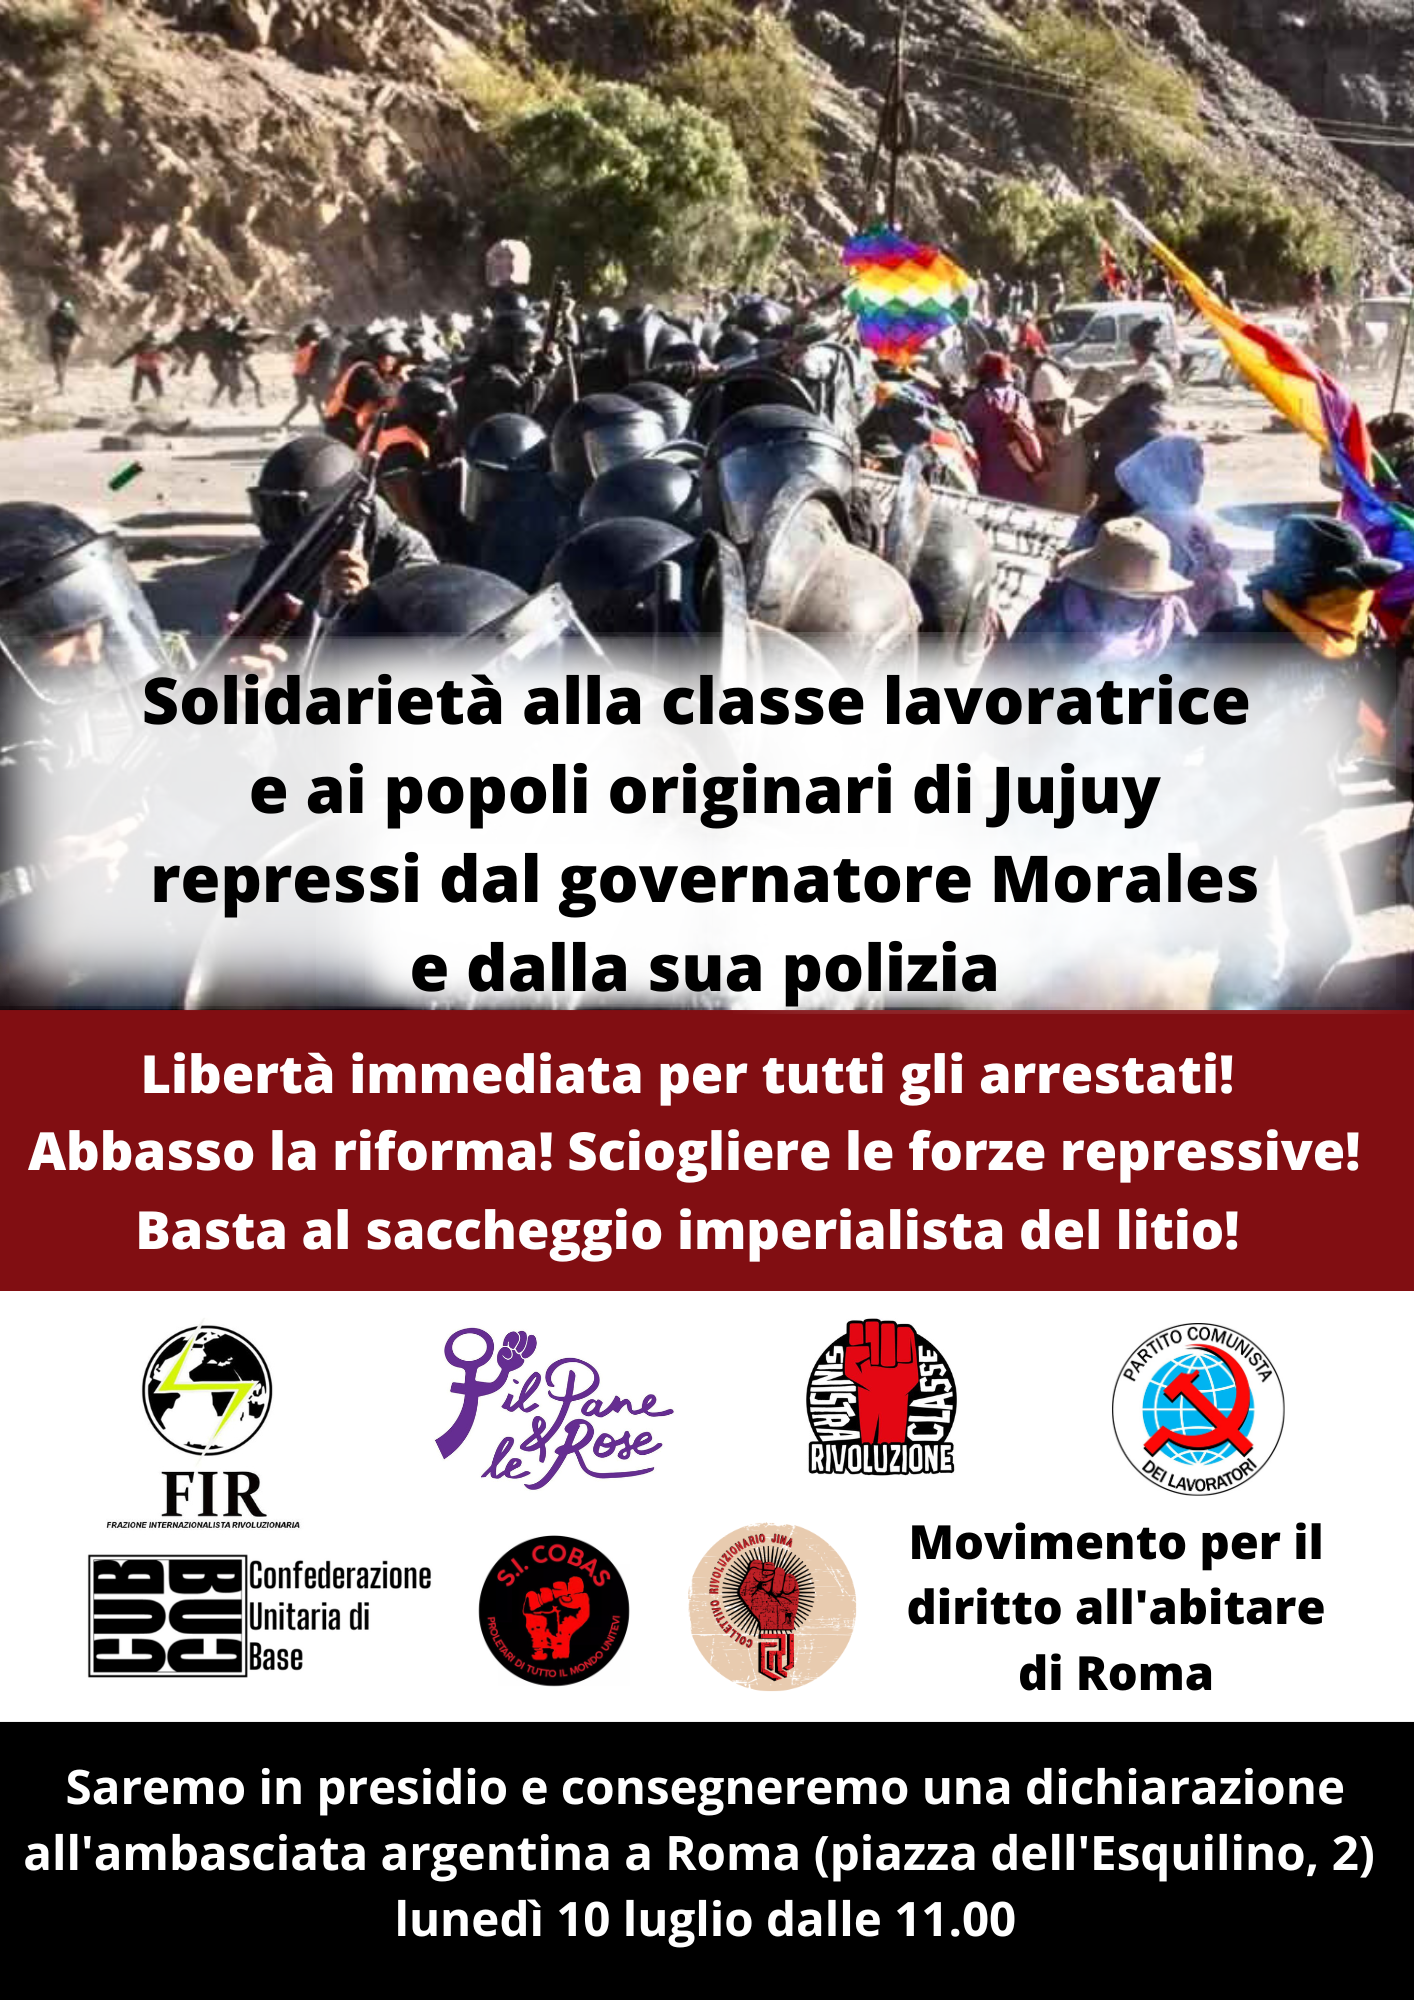 Lunedì 10 dalle 11.00 a Roma, presidio in solidarietà con la lotta popolare a Jujuy in Argentina